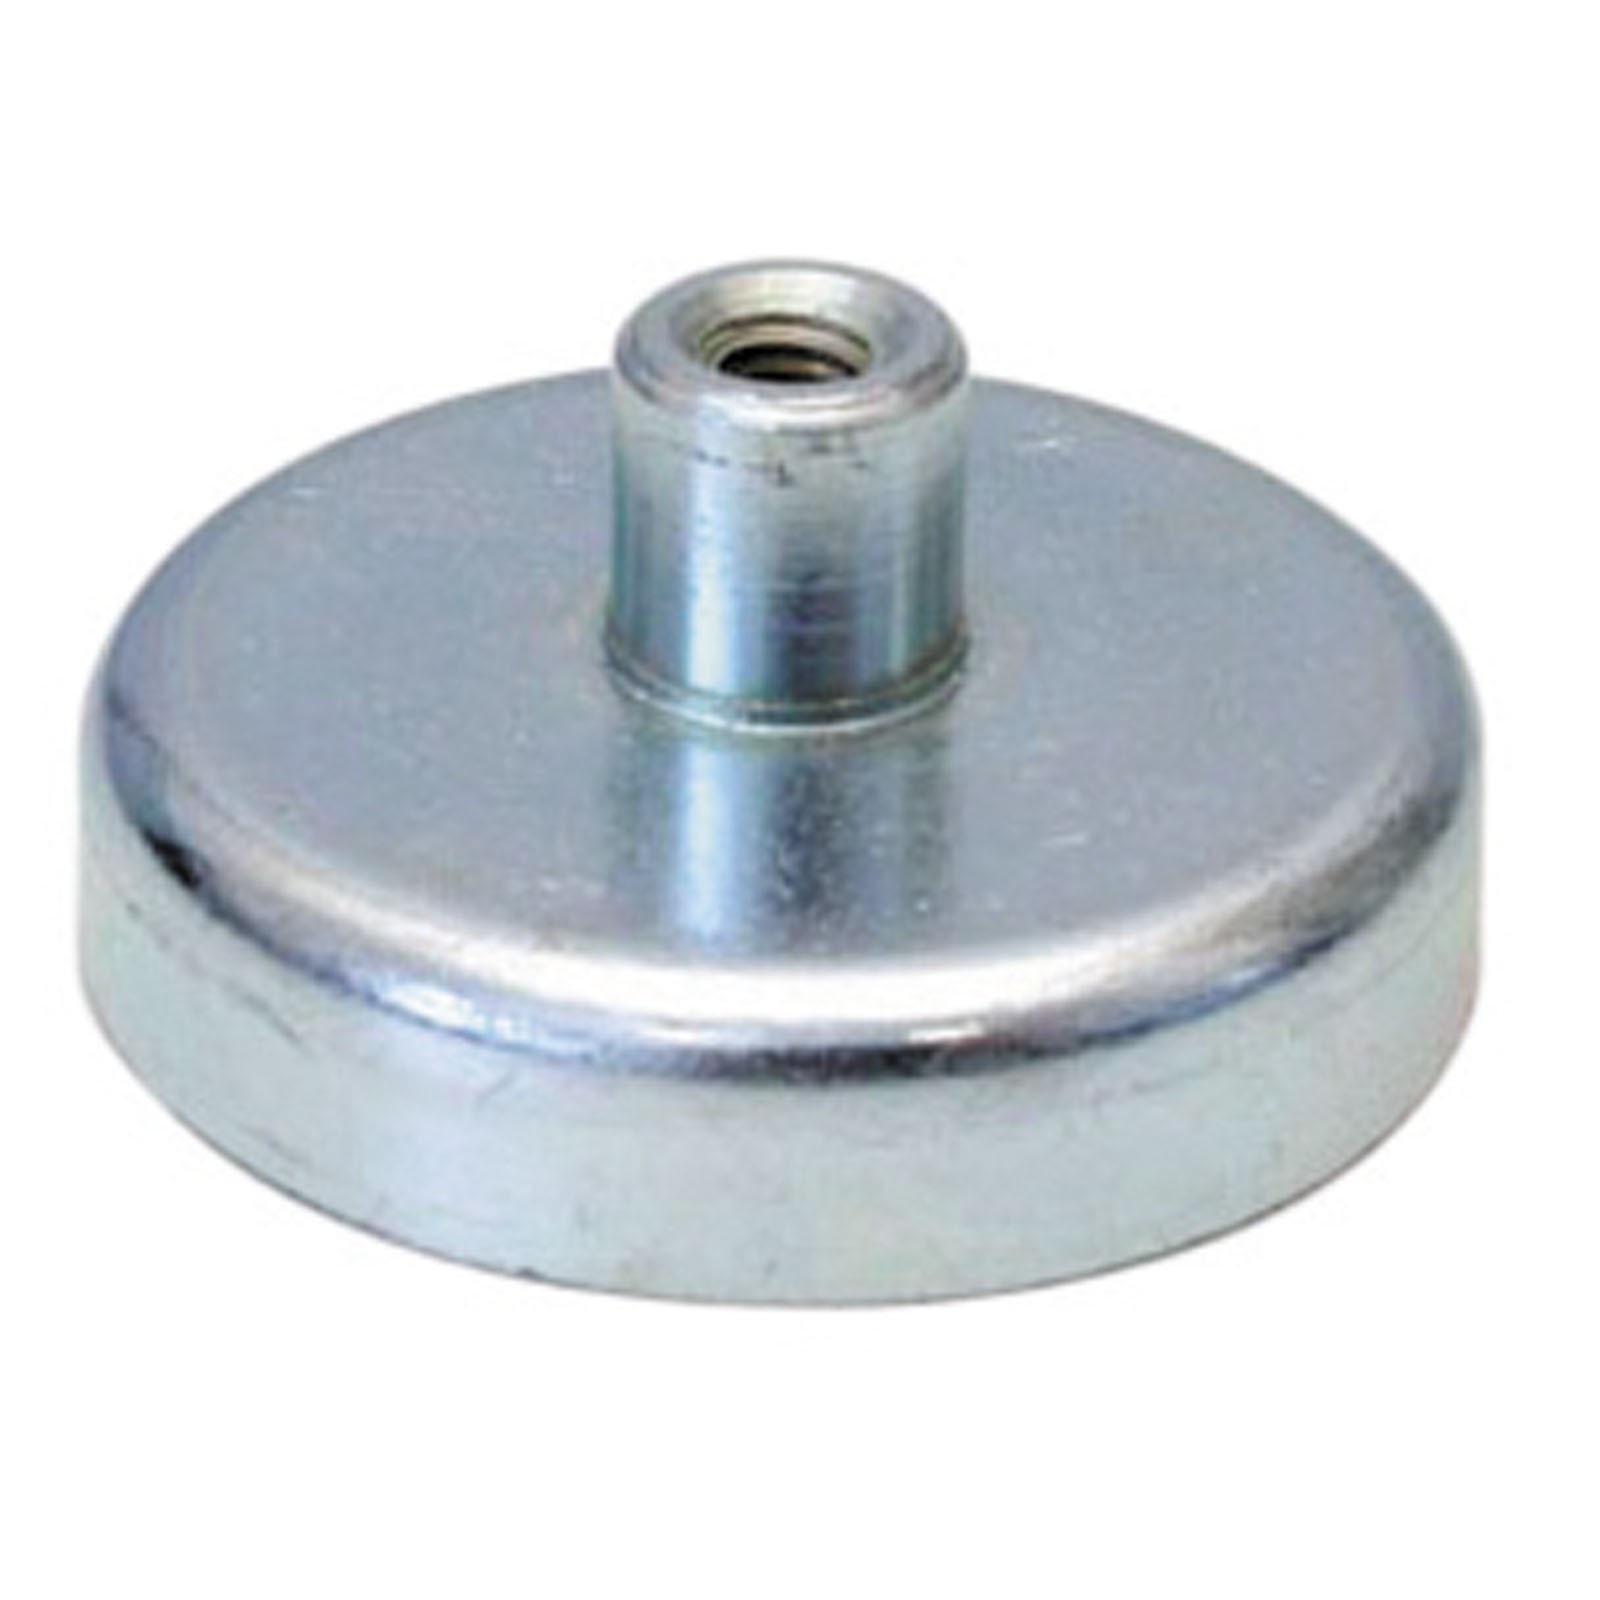 Flachgreifer Magnet mit Gewinde - Magnetfuß, Topfmagnet - div. Größen 10 - 125mm Größe:25.0 mm von Rimag